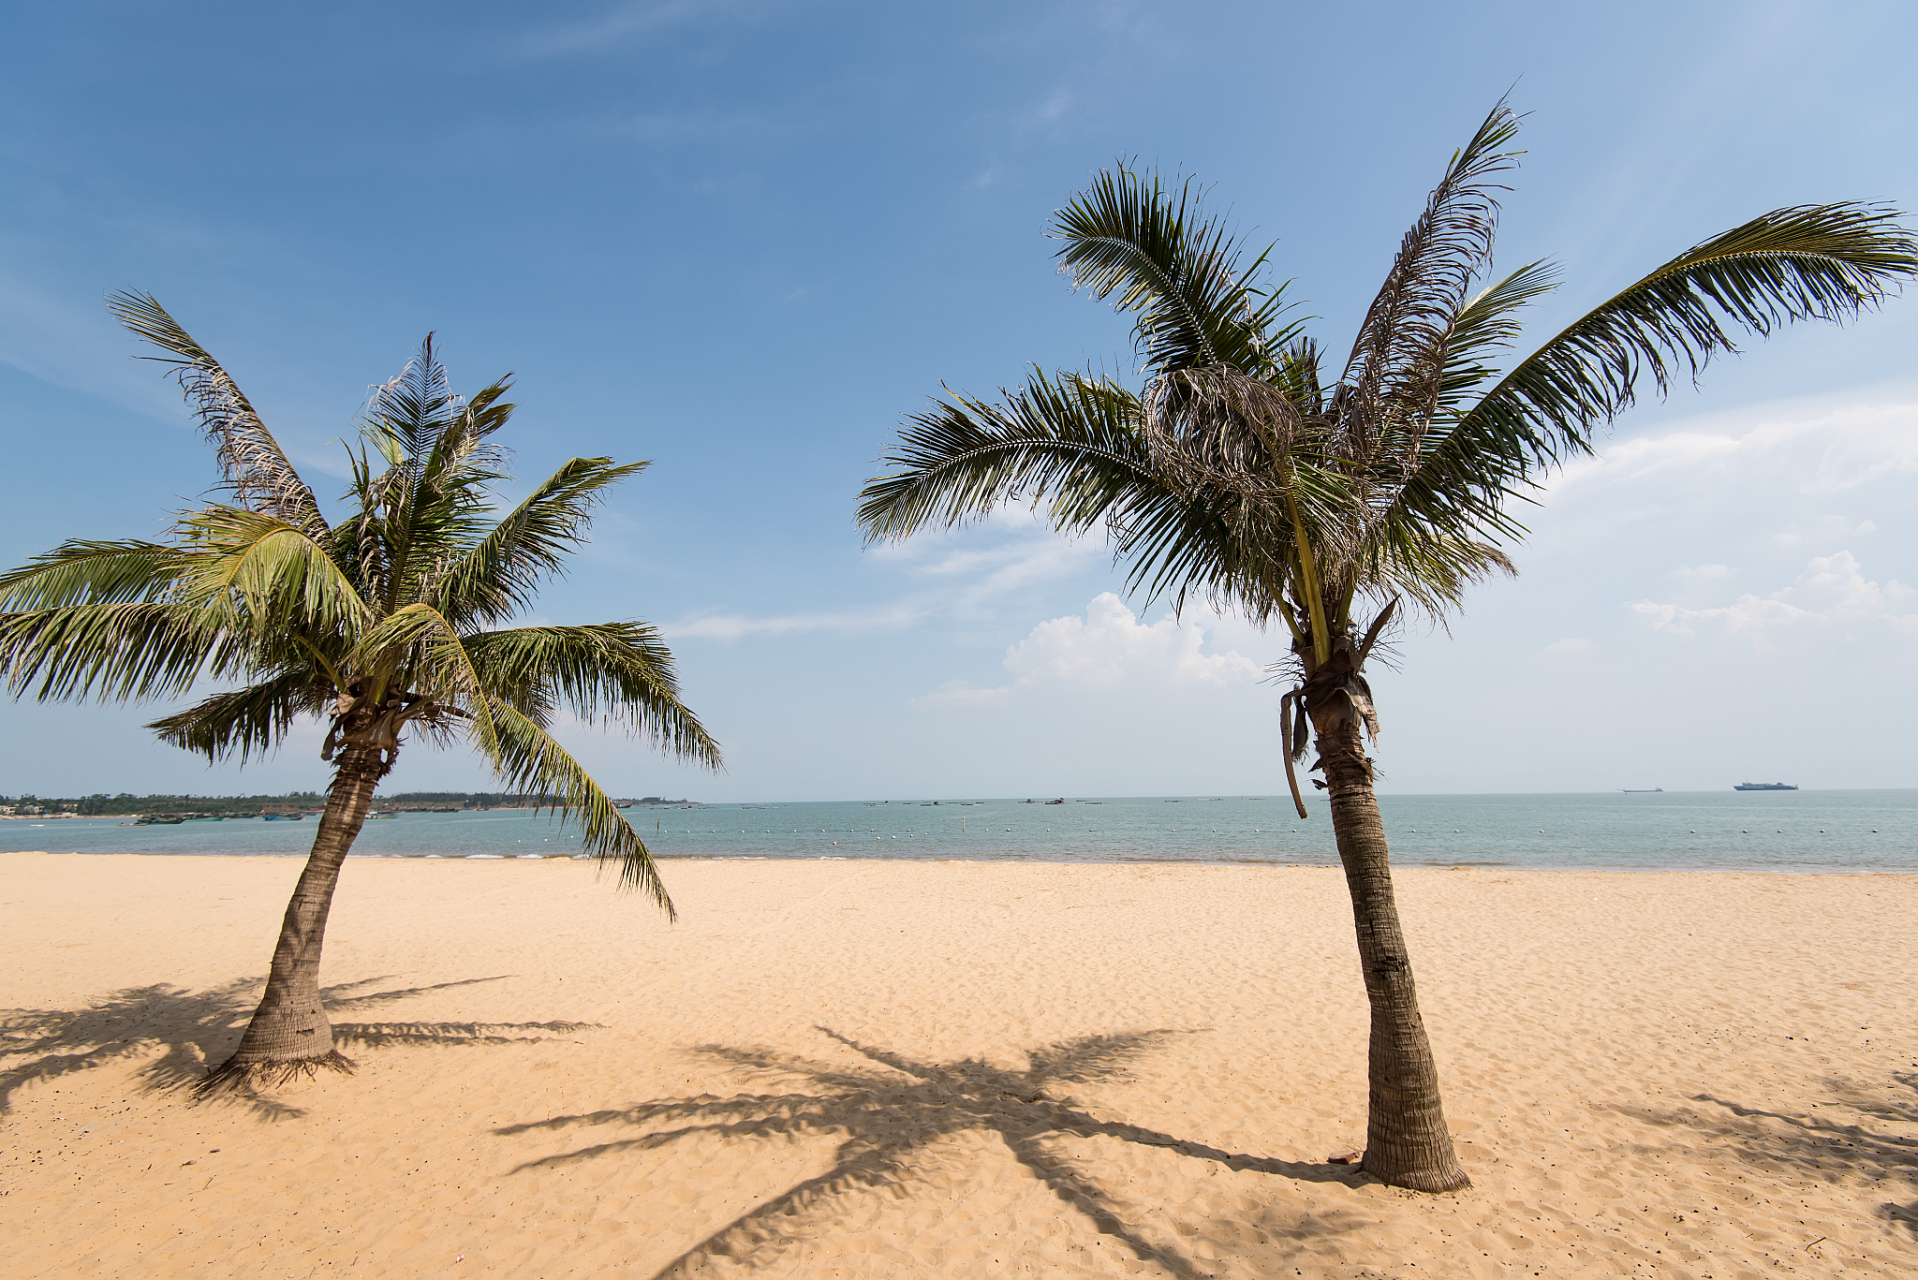 棕榈海滩(palm beach)位于美国佛罗里达州东南部的棕榈滩县,是一个